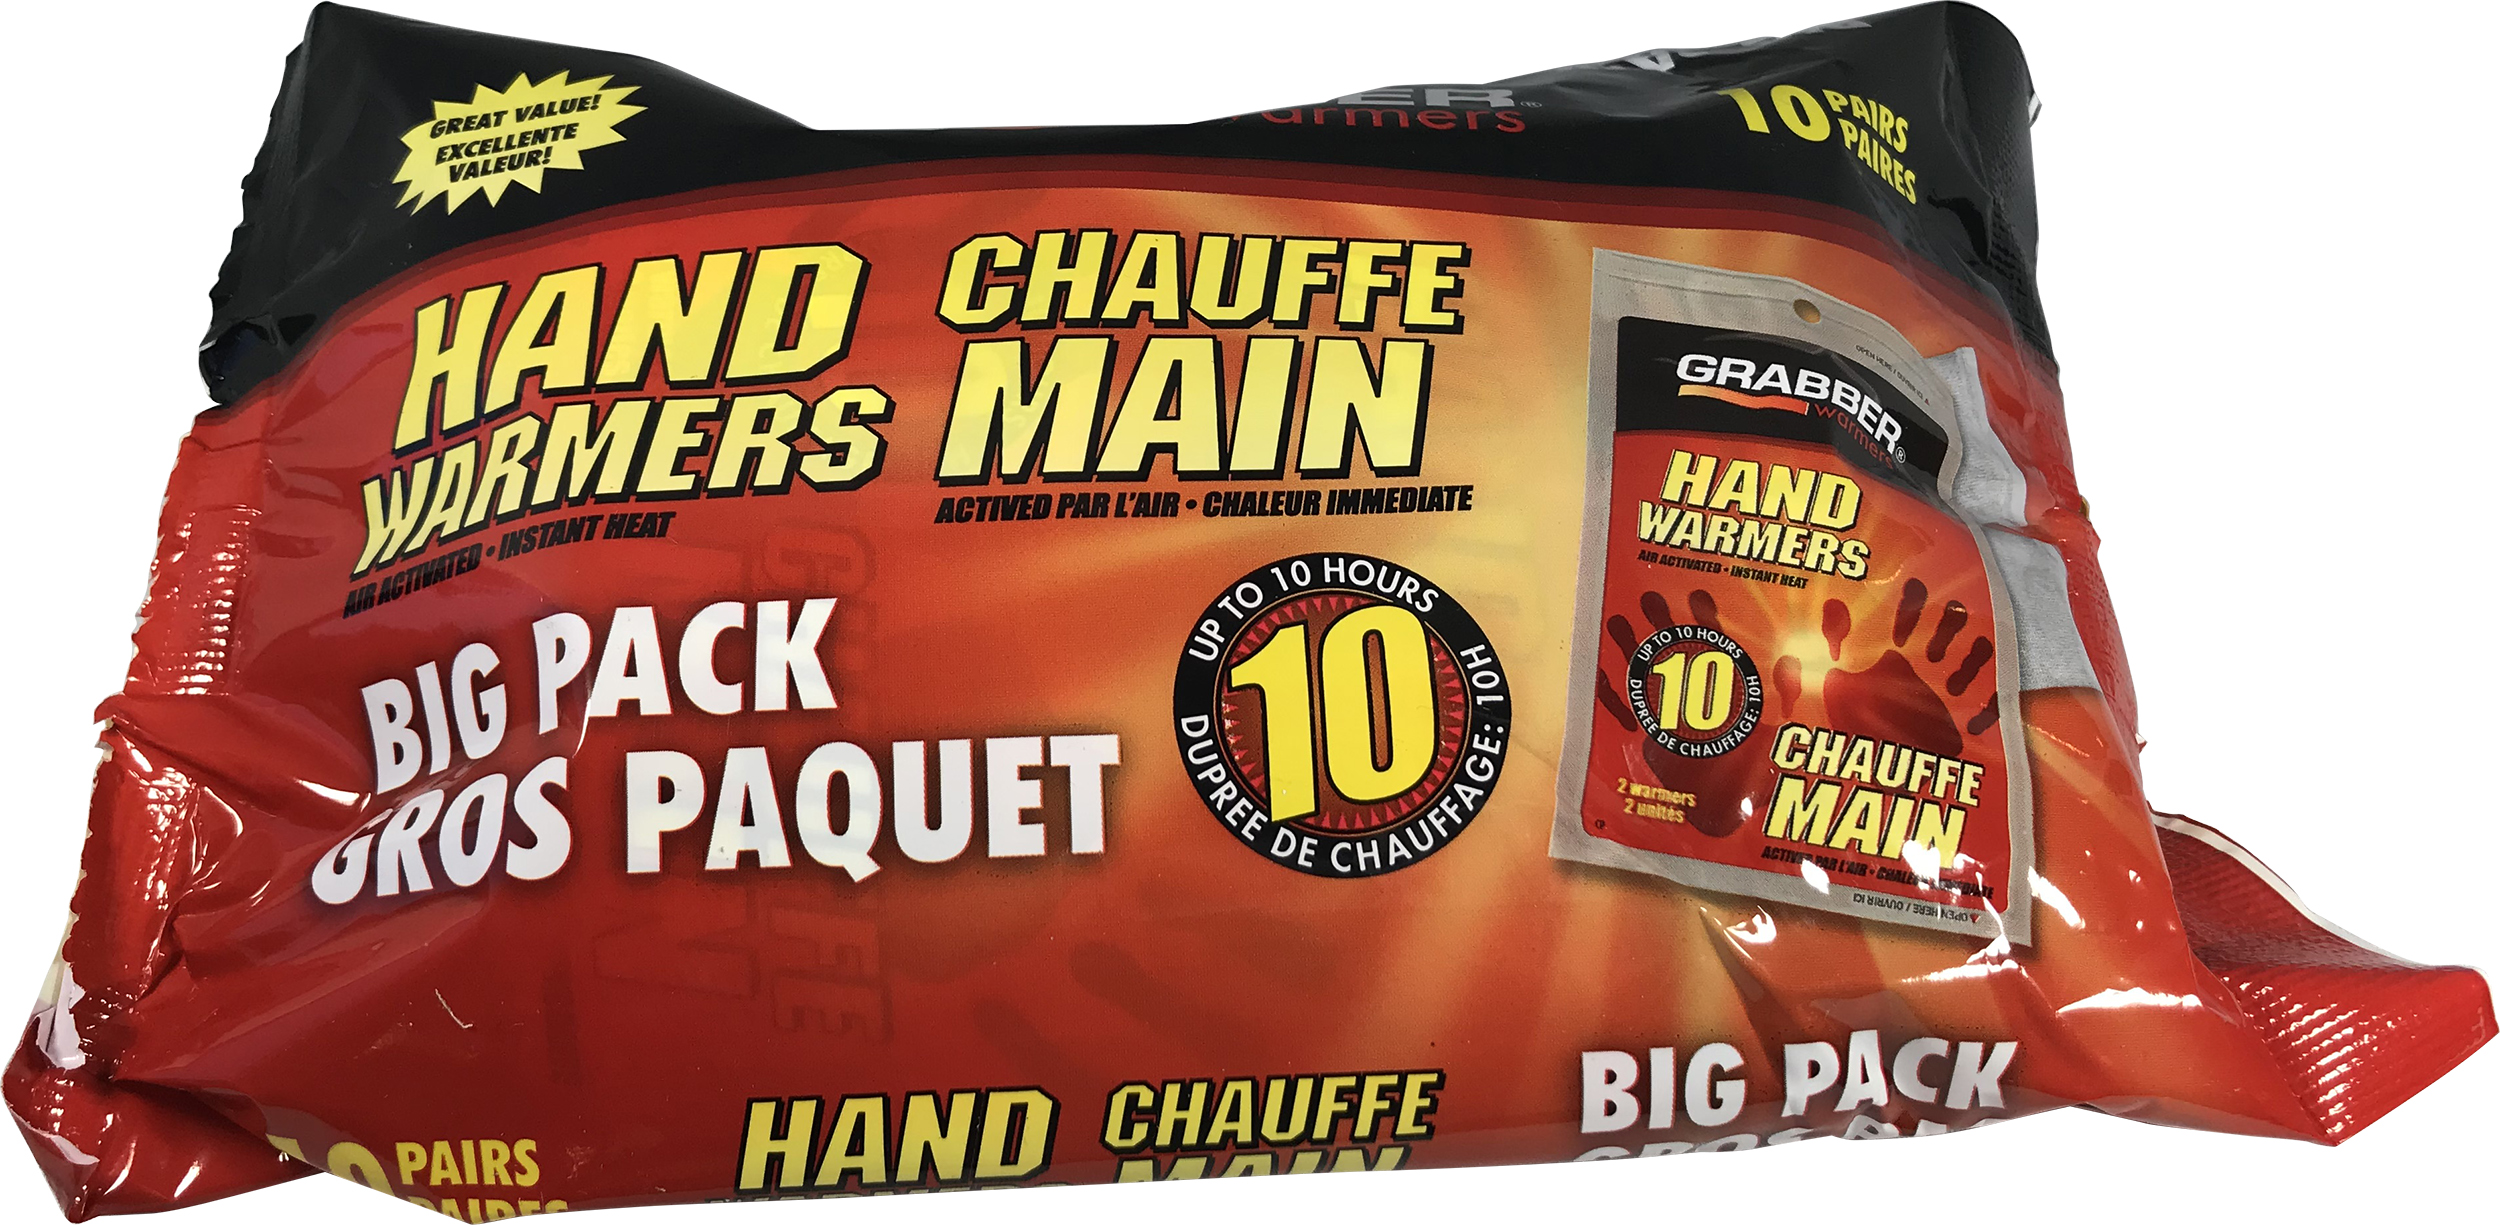 Chauffe-mains (paquet de 10) de Grabber